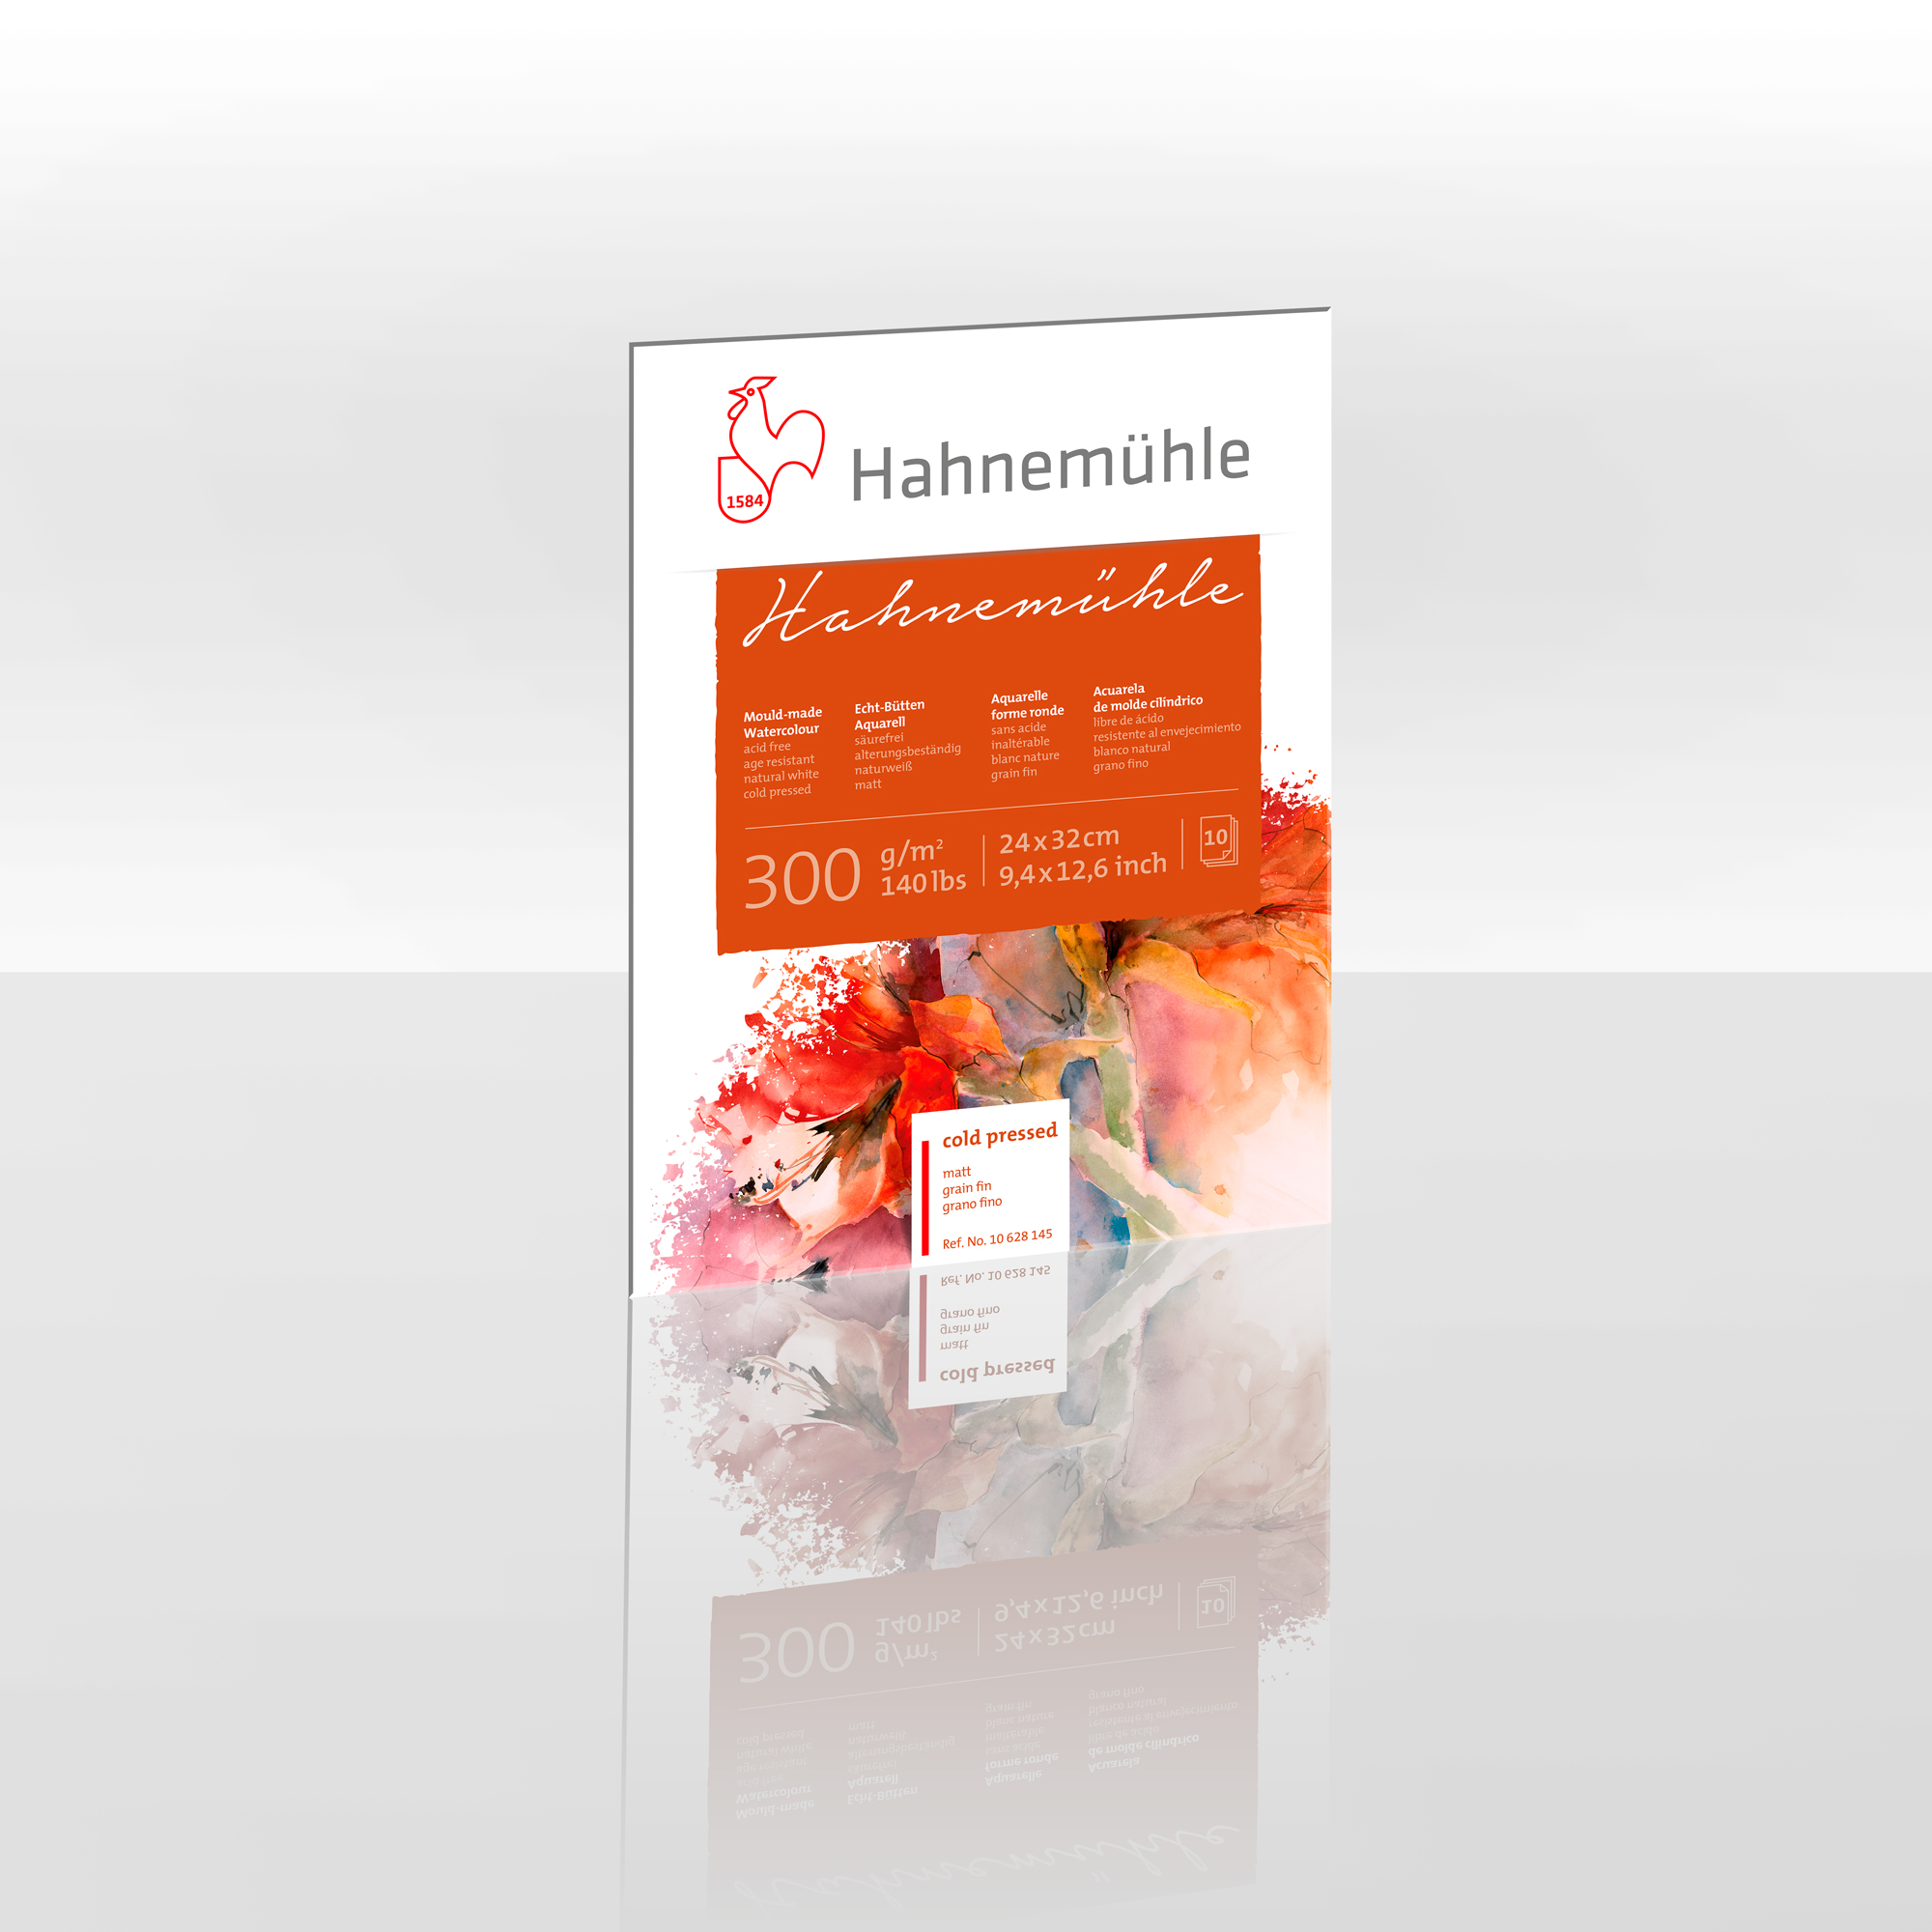 10628145-hahnemuehle-300-matt-24x32cm